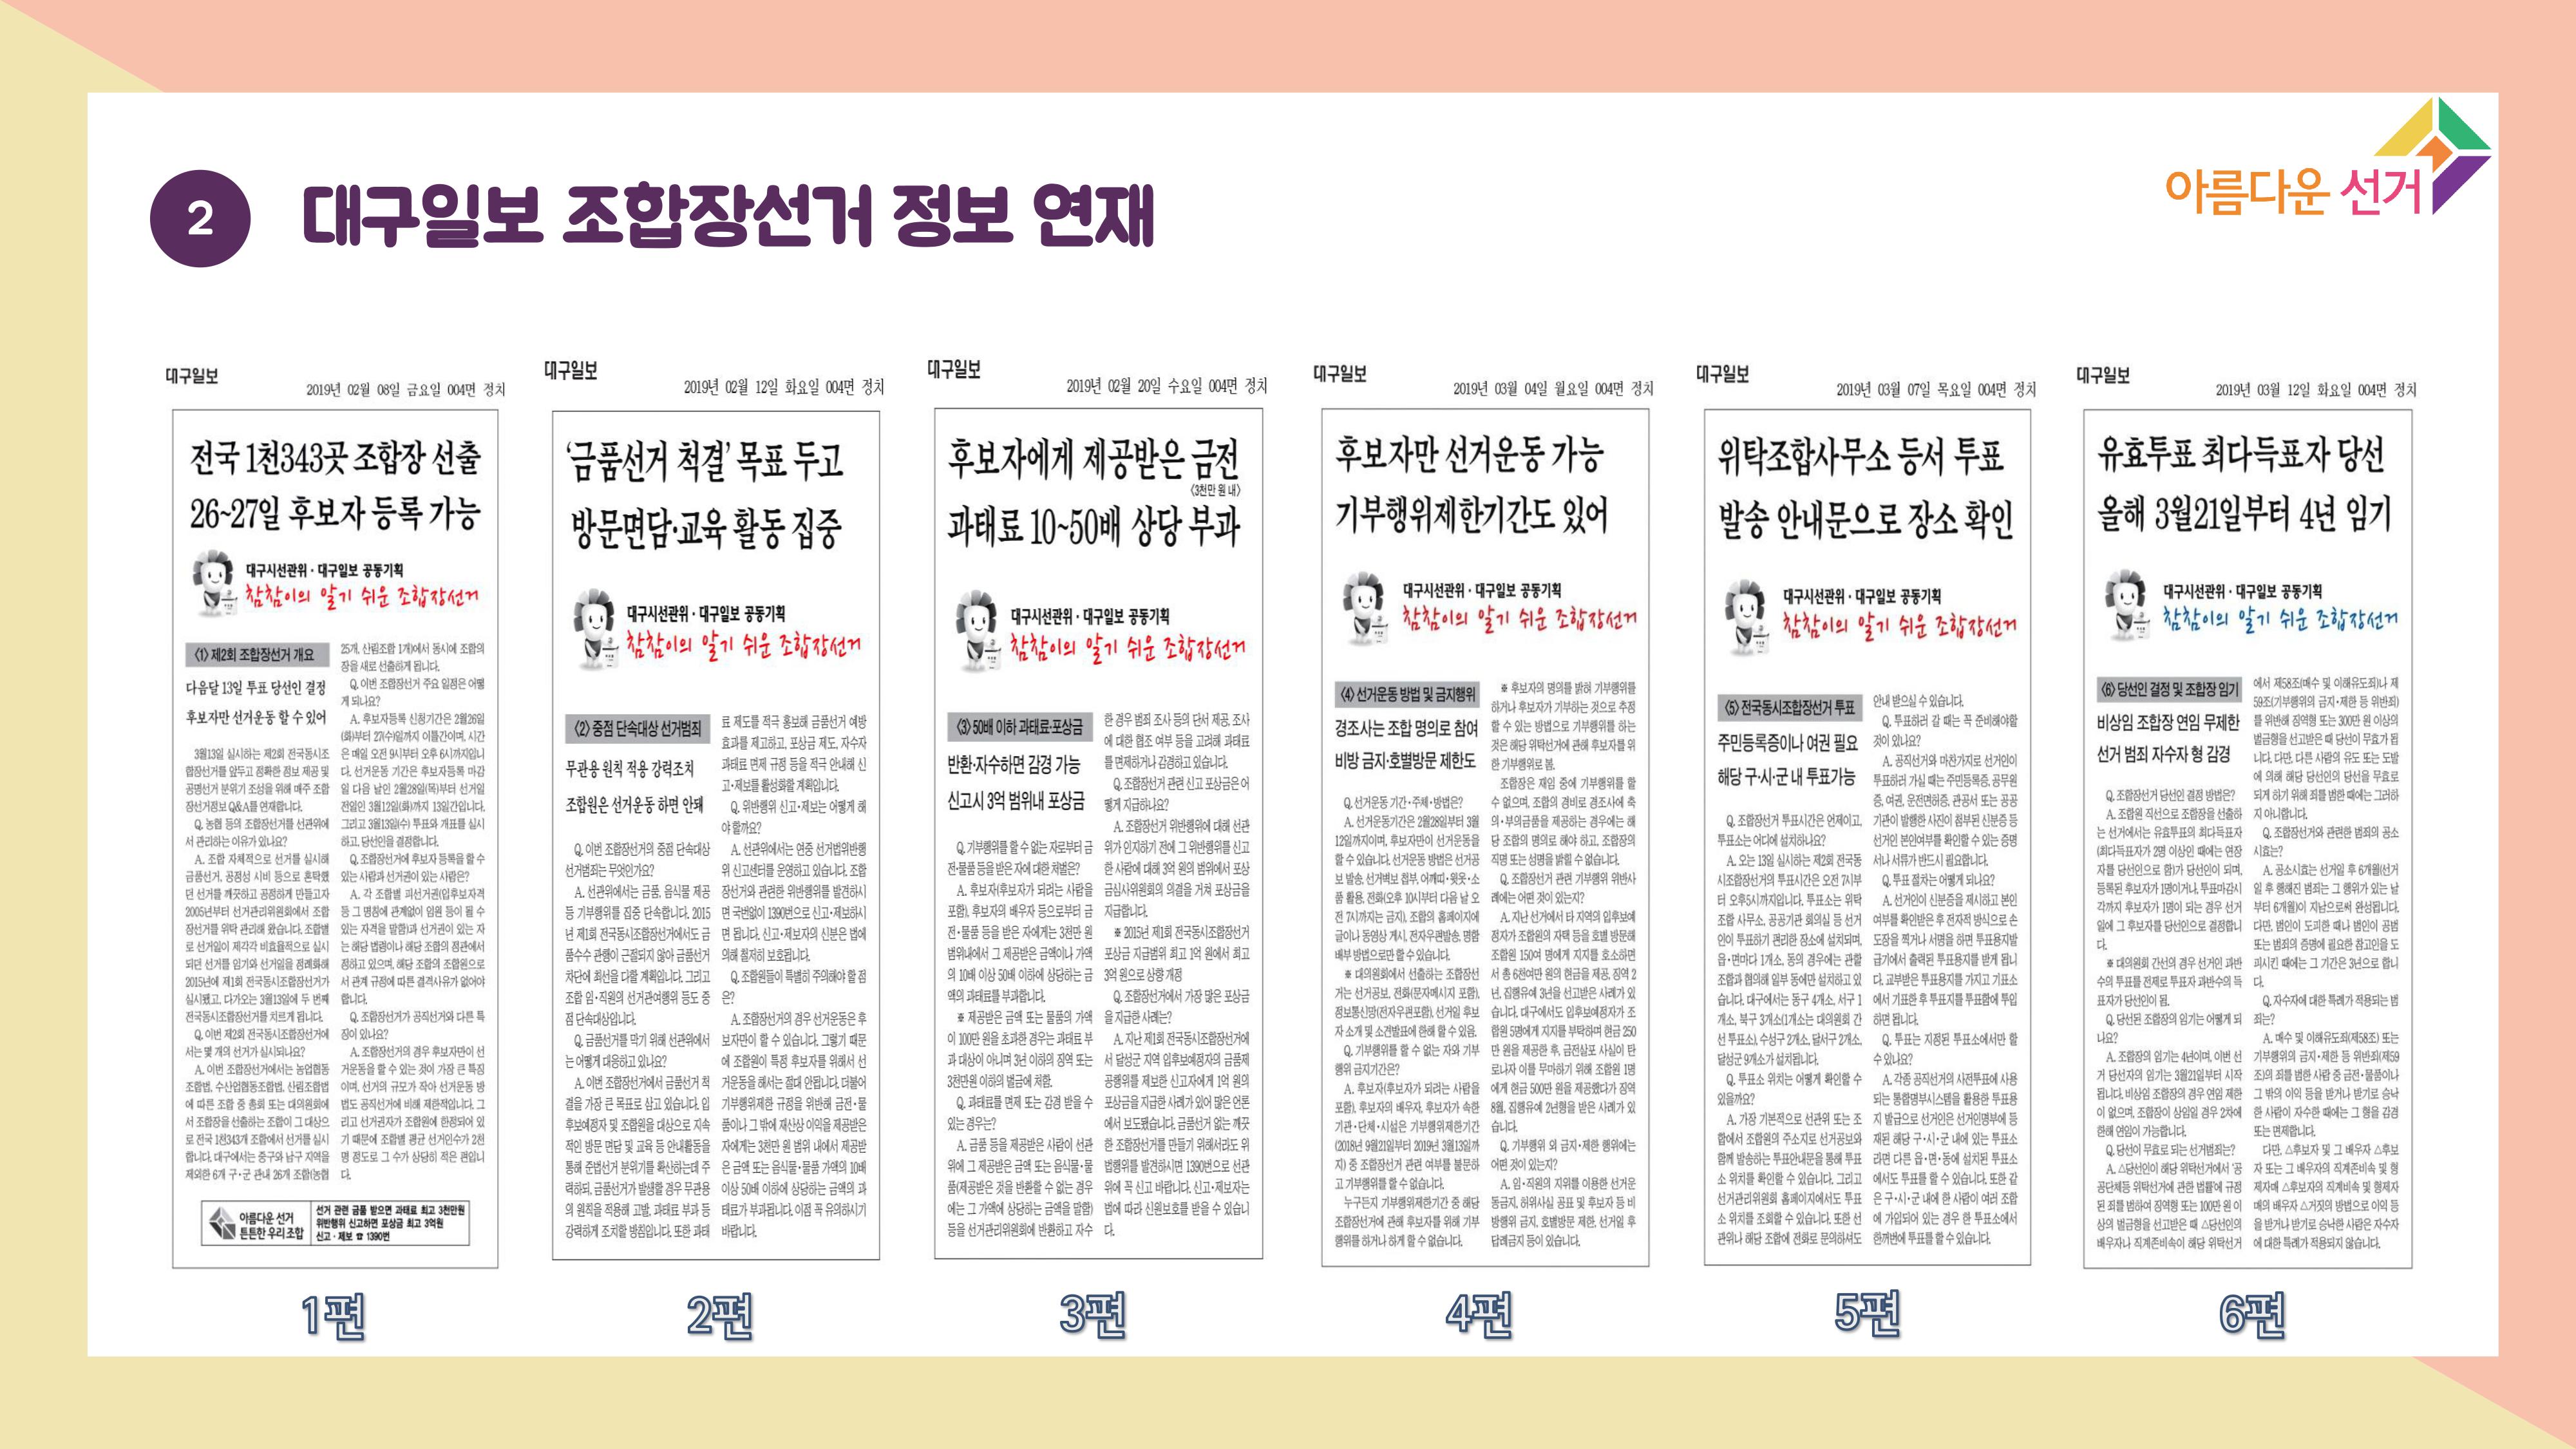 2. 대구일보 조합장선거 정보 연재 신문 스크랩